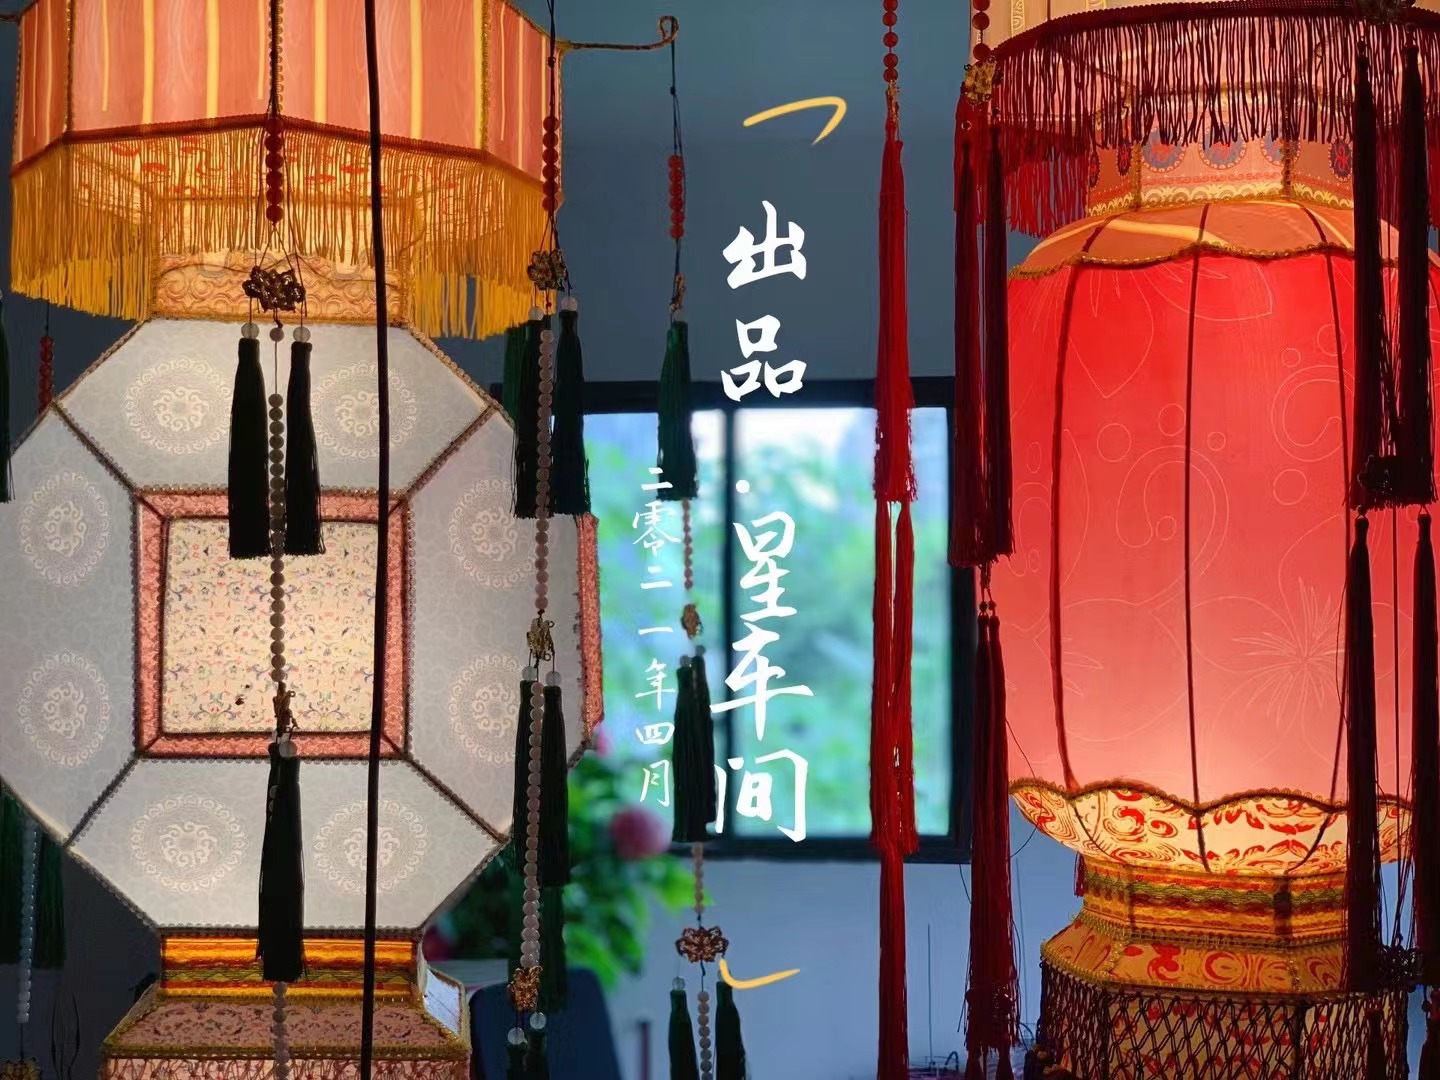 Star Factory Ltd. osvjetljava Japan svjetiljkama iz palače inspiriranim dinastijom Tang